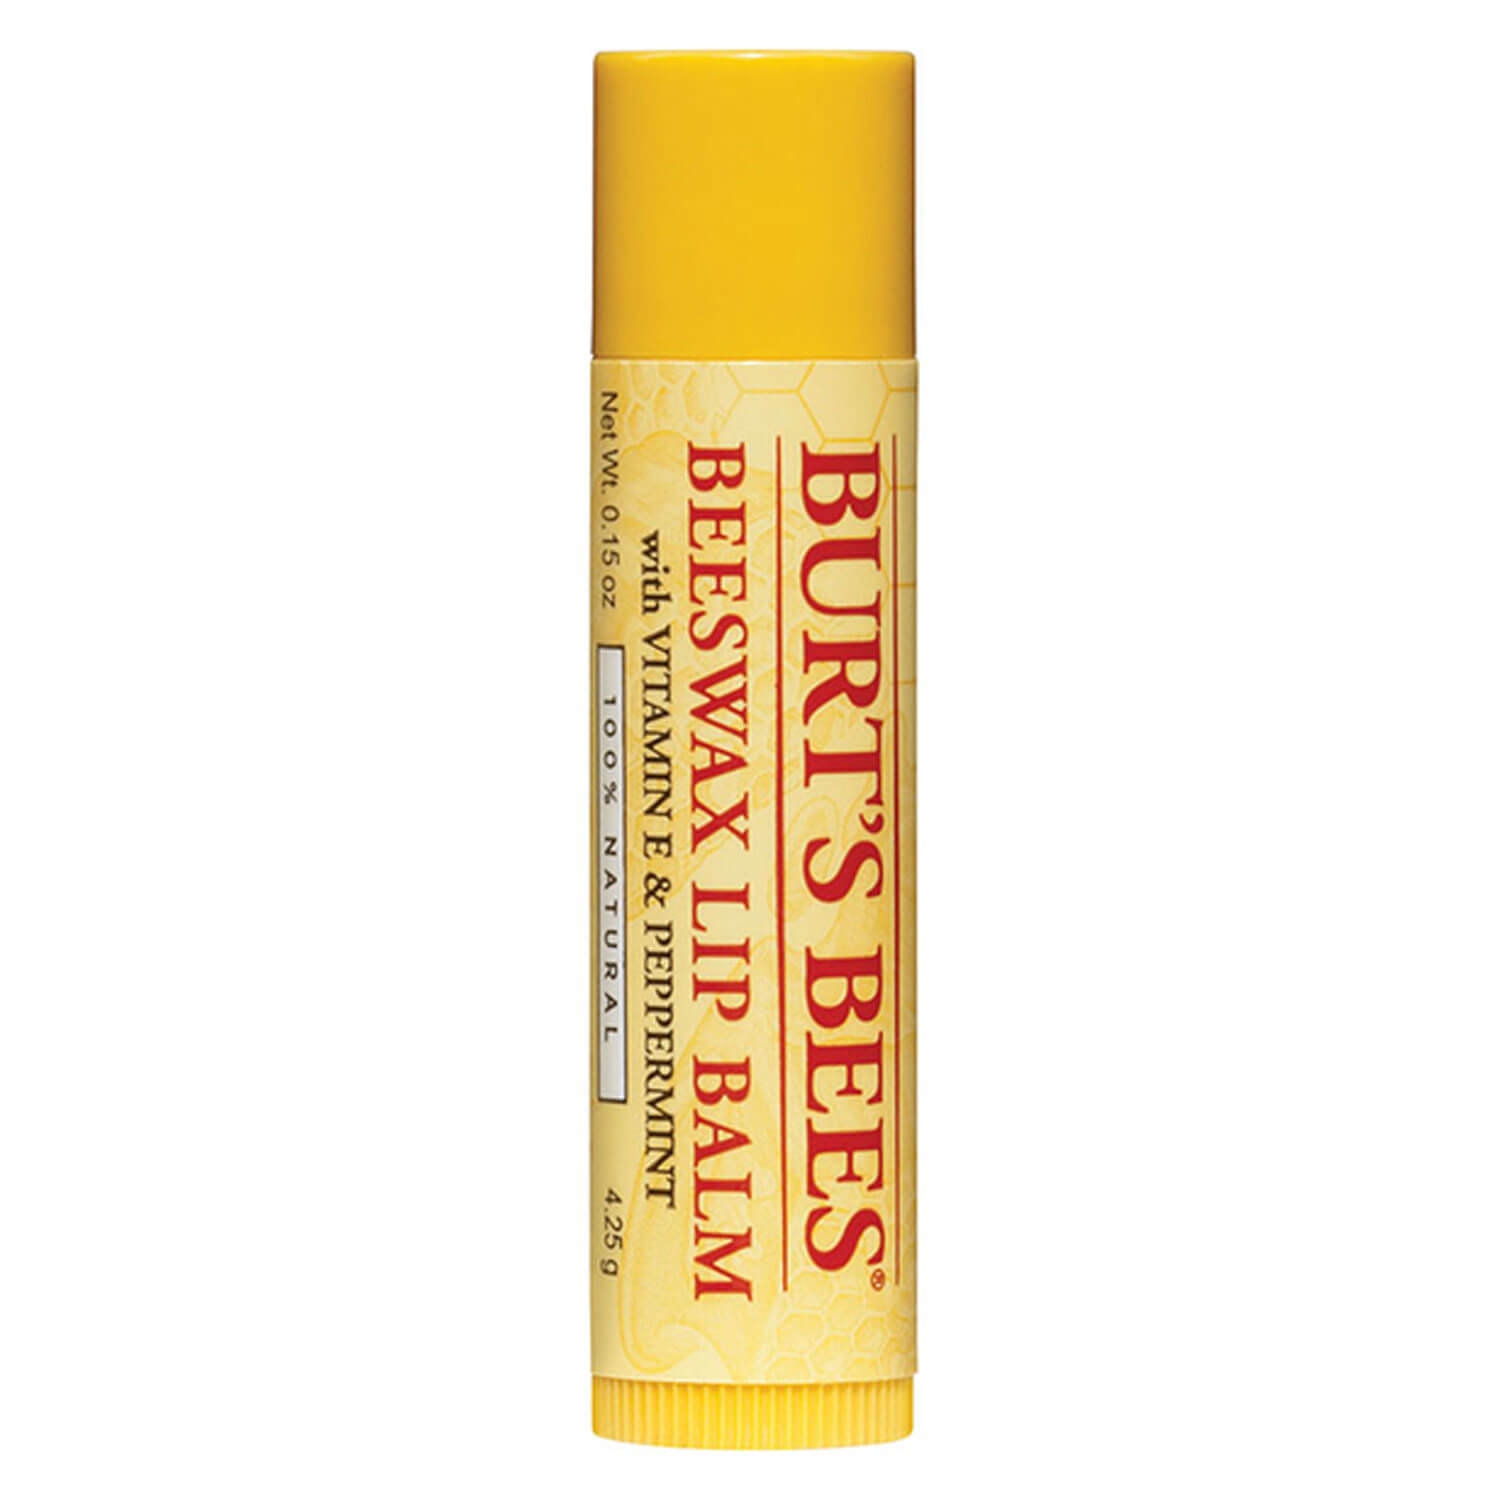 Produktbild von Burt's Bees - Lip Balm Beeswax